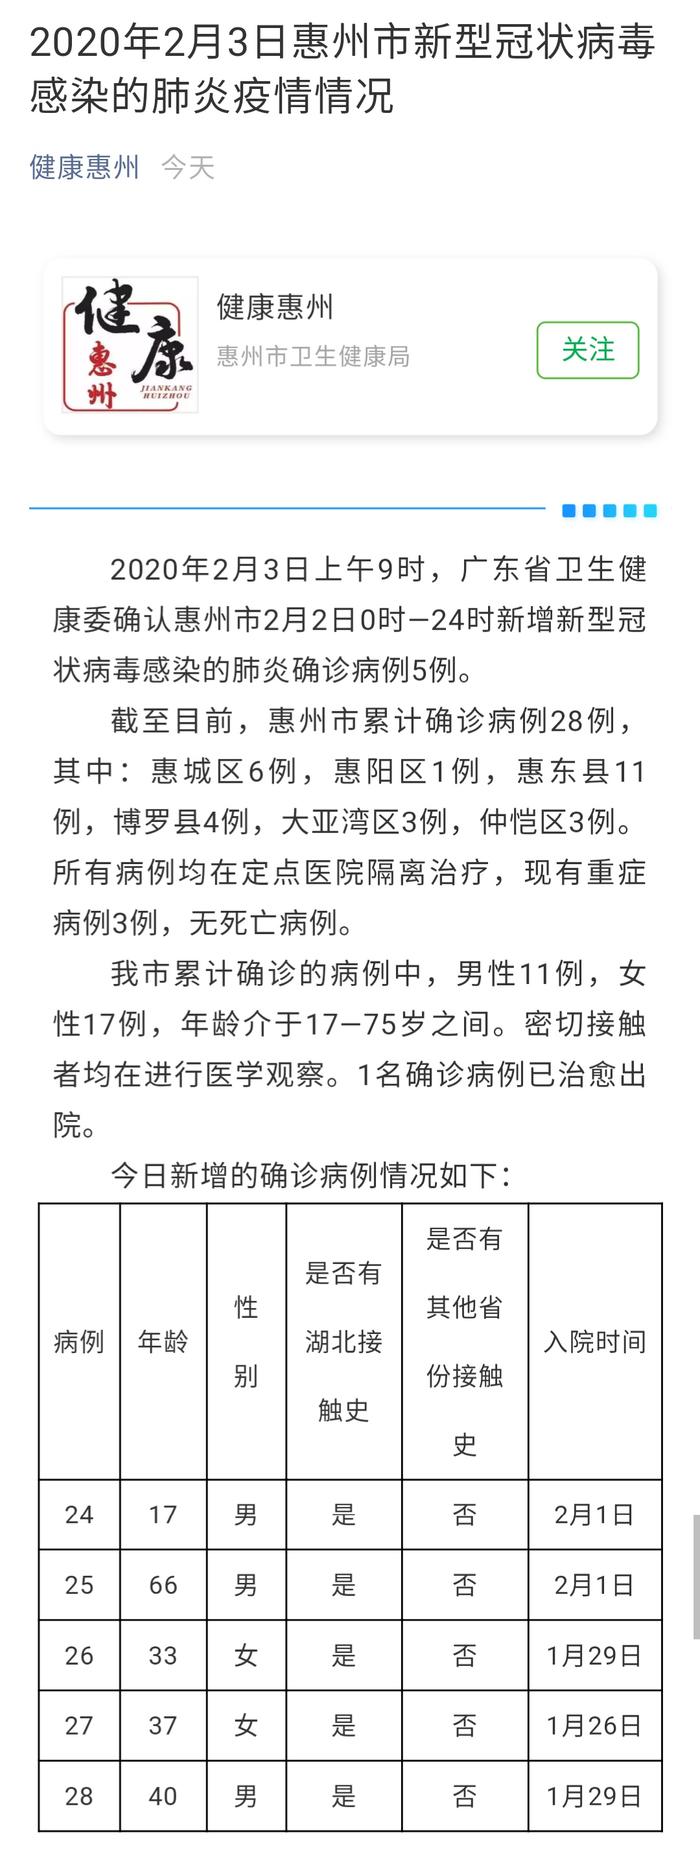 惠州新增5例确诊病例 累计确诊28例